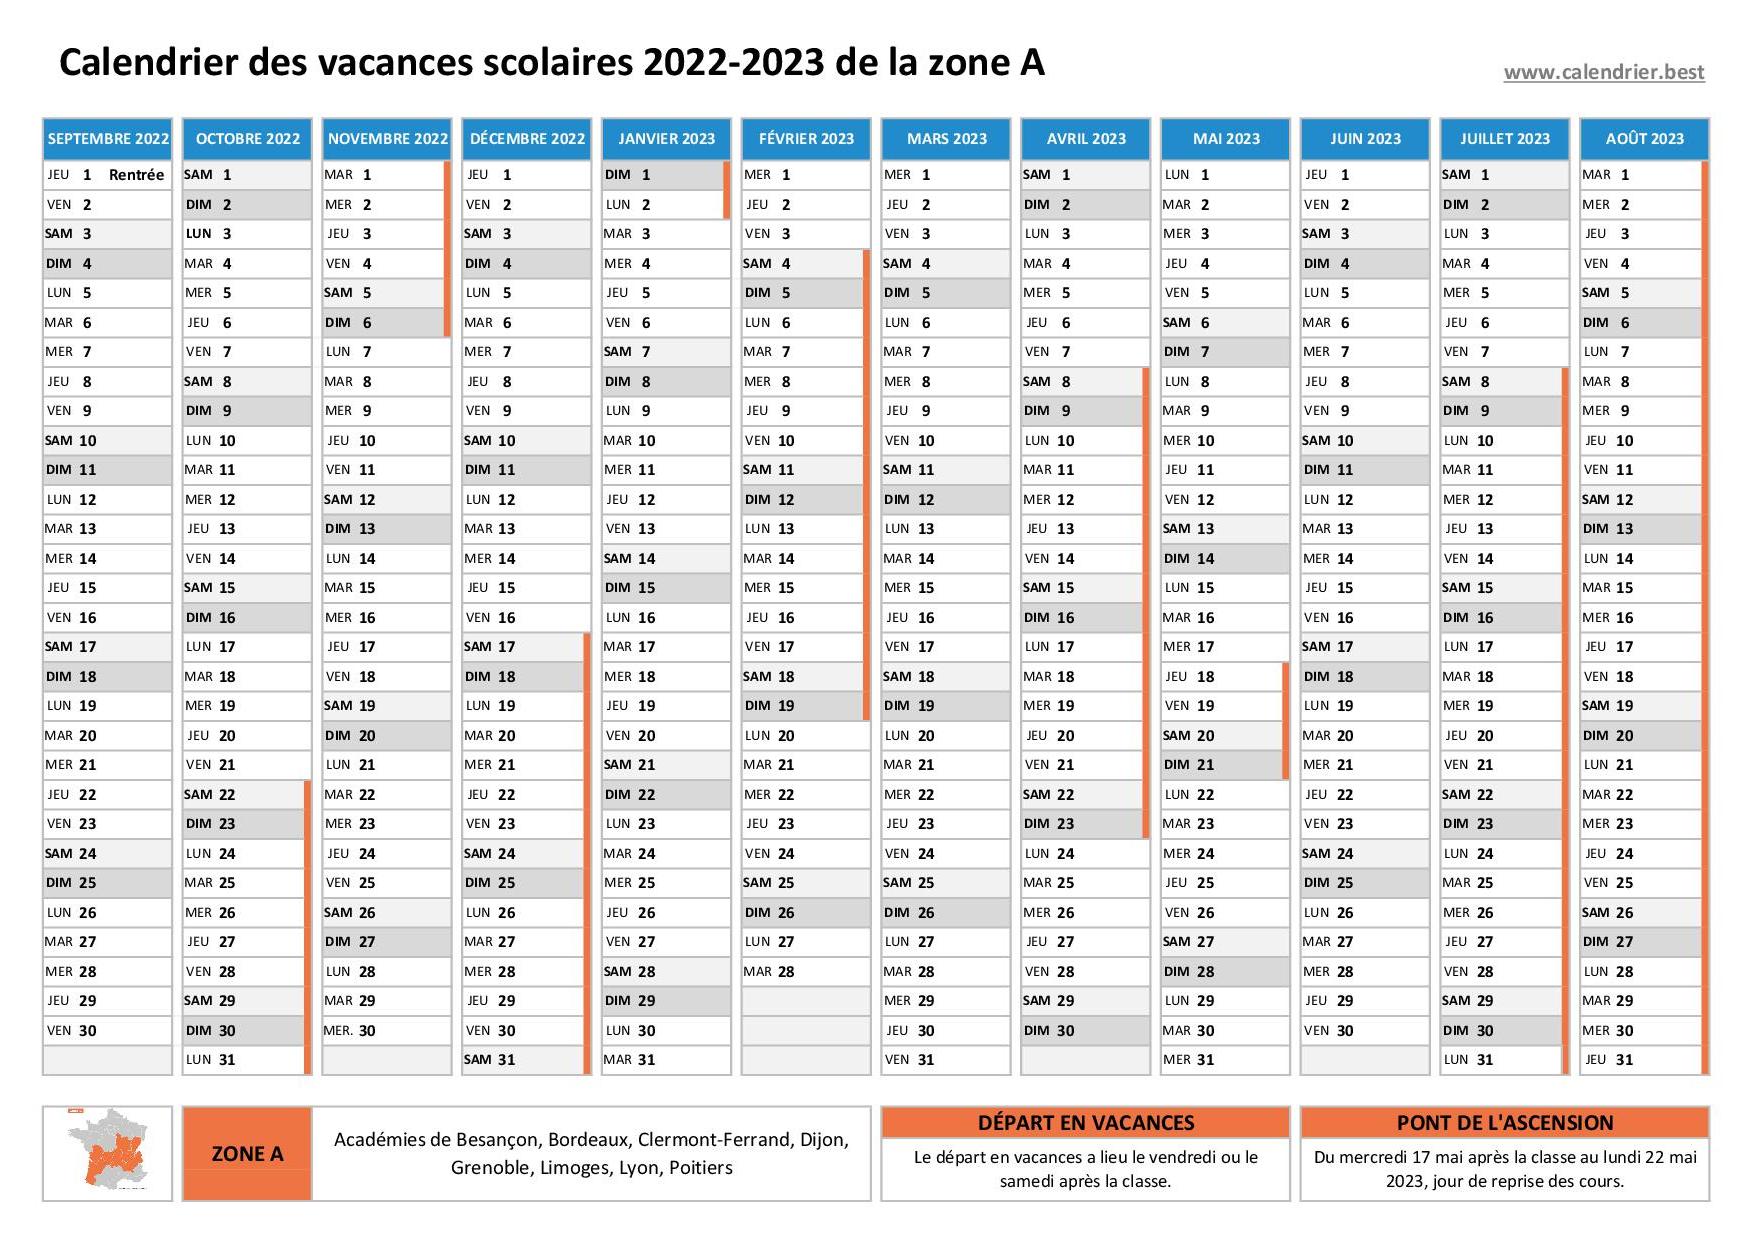 Vacances scolaires 2022 2023 Grenoble : dates et calendrier scolaire 2022 -2023